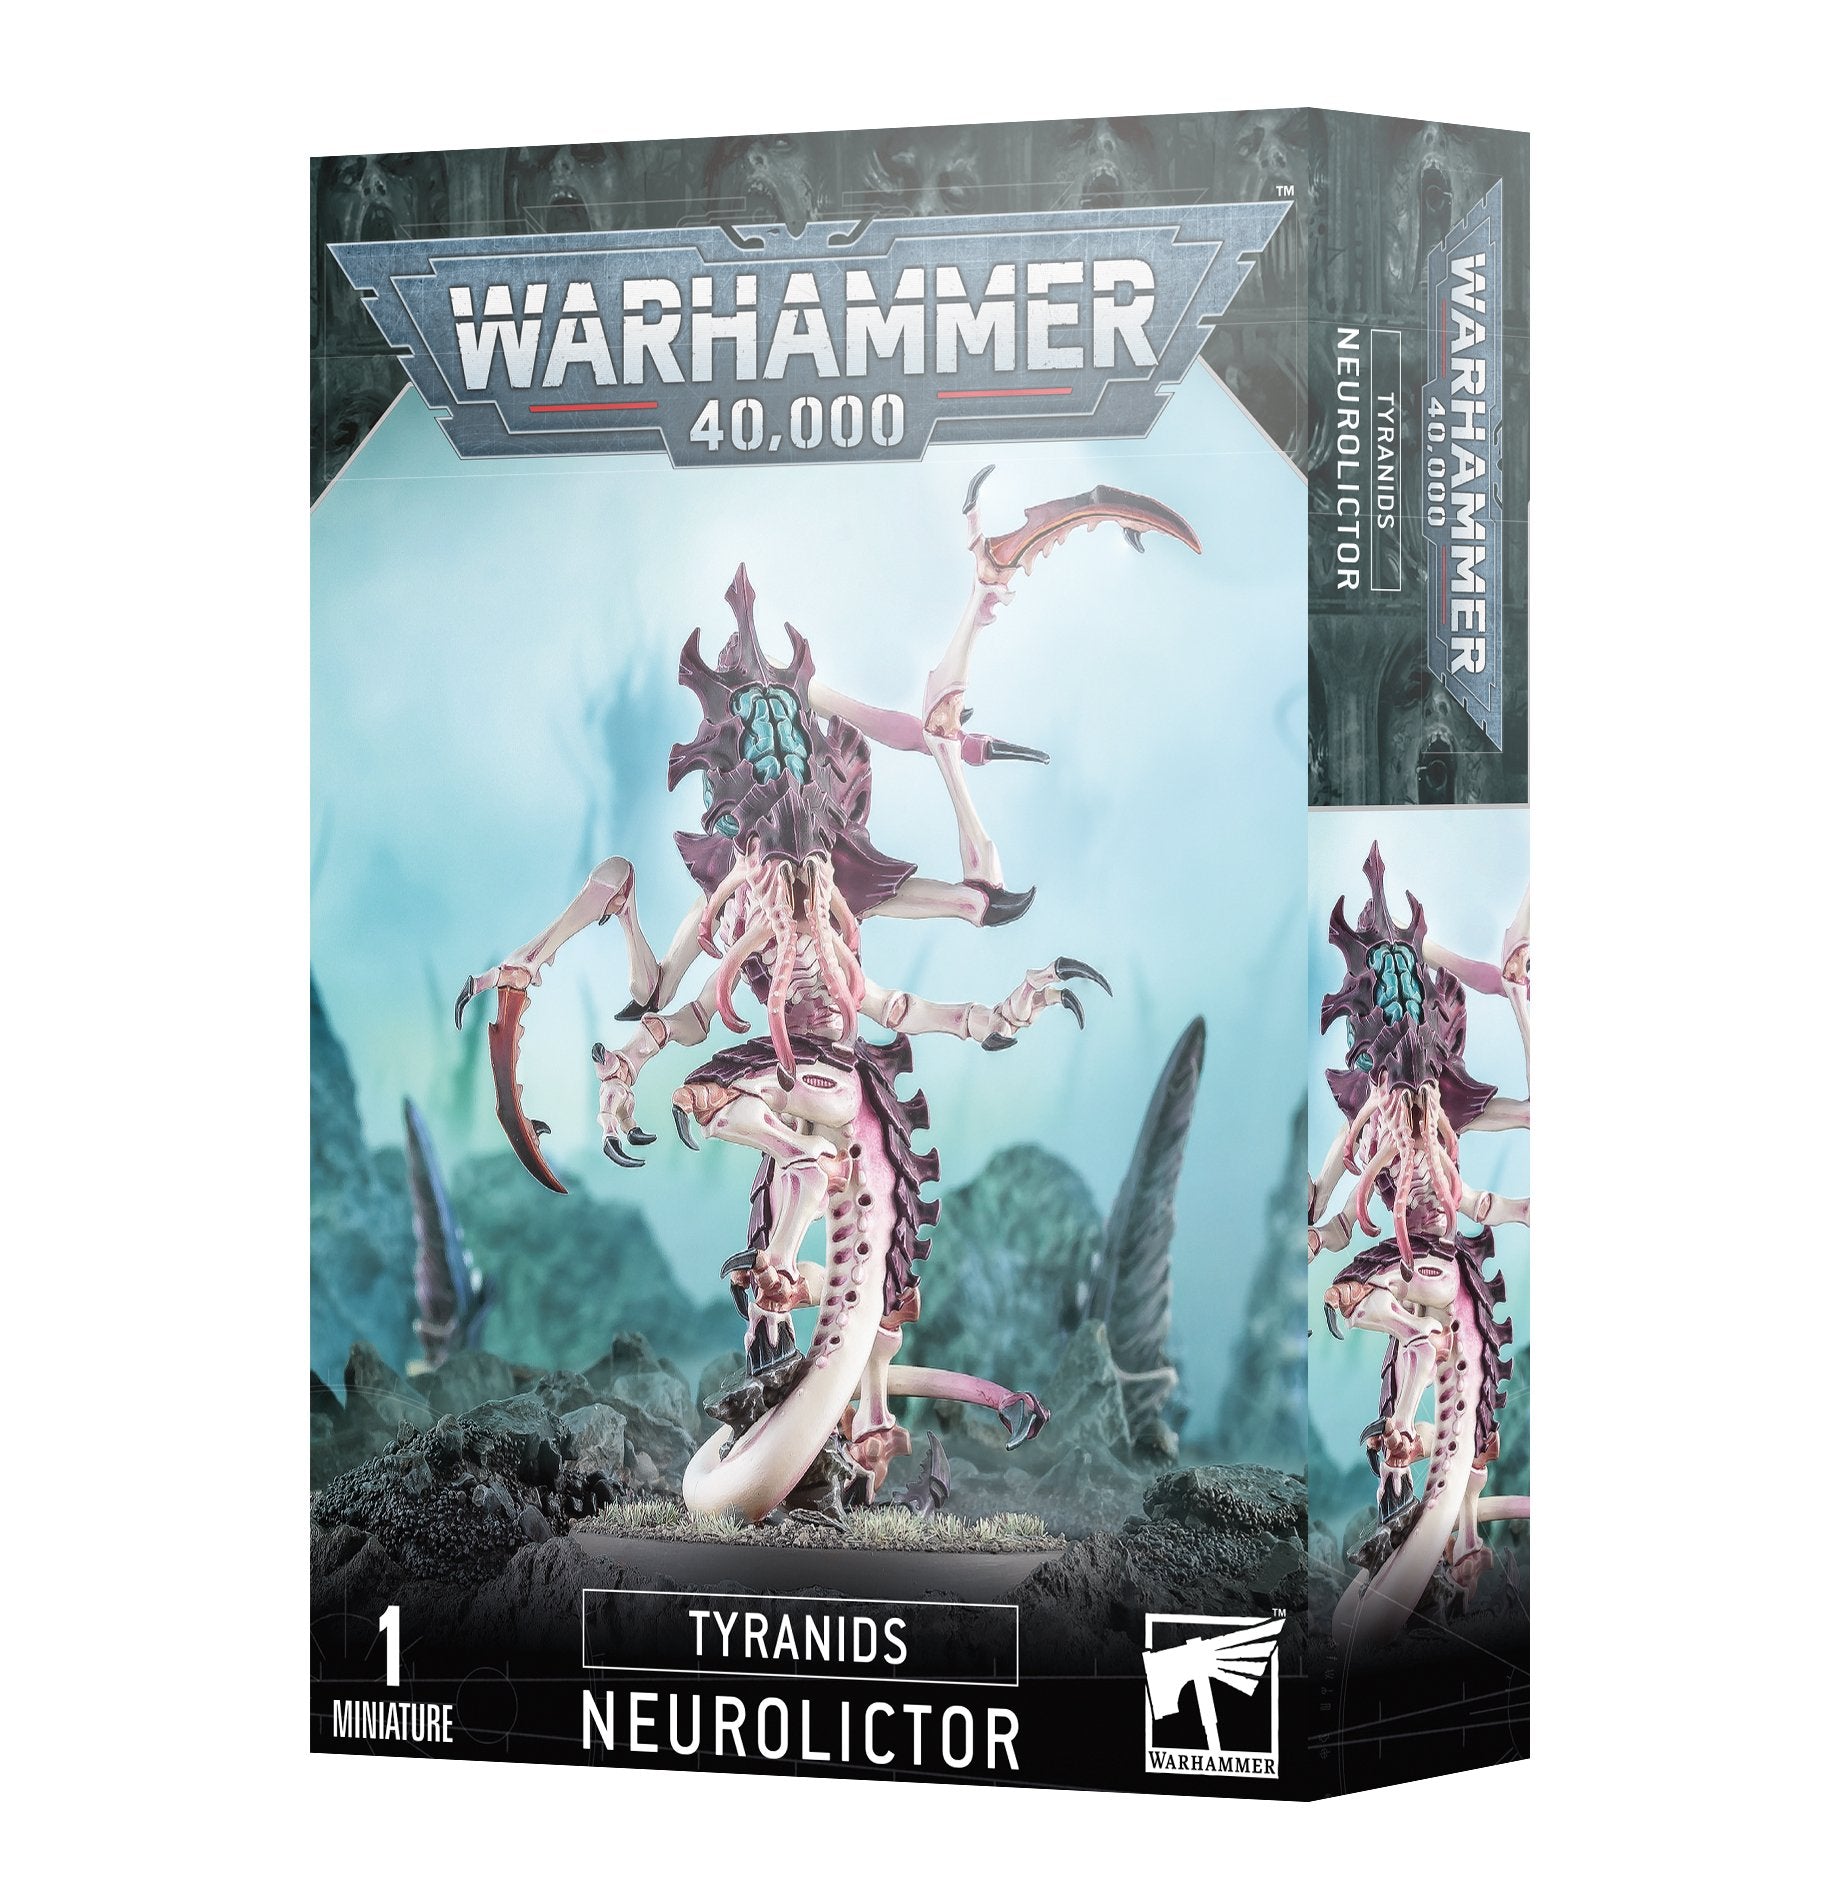 Warhammer 40K: Adeptus Mechanicus - Technoarcheologist